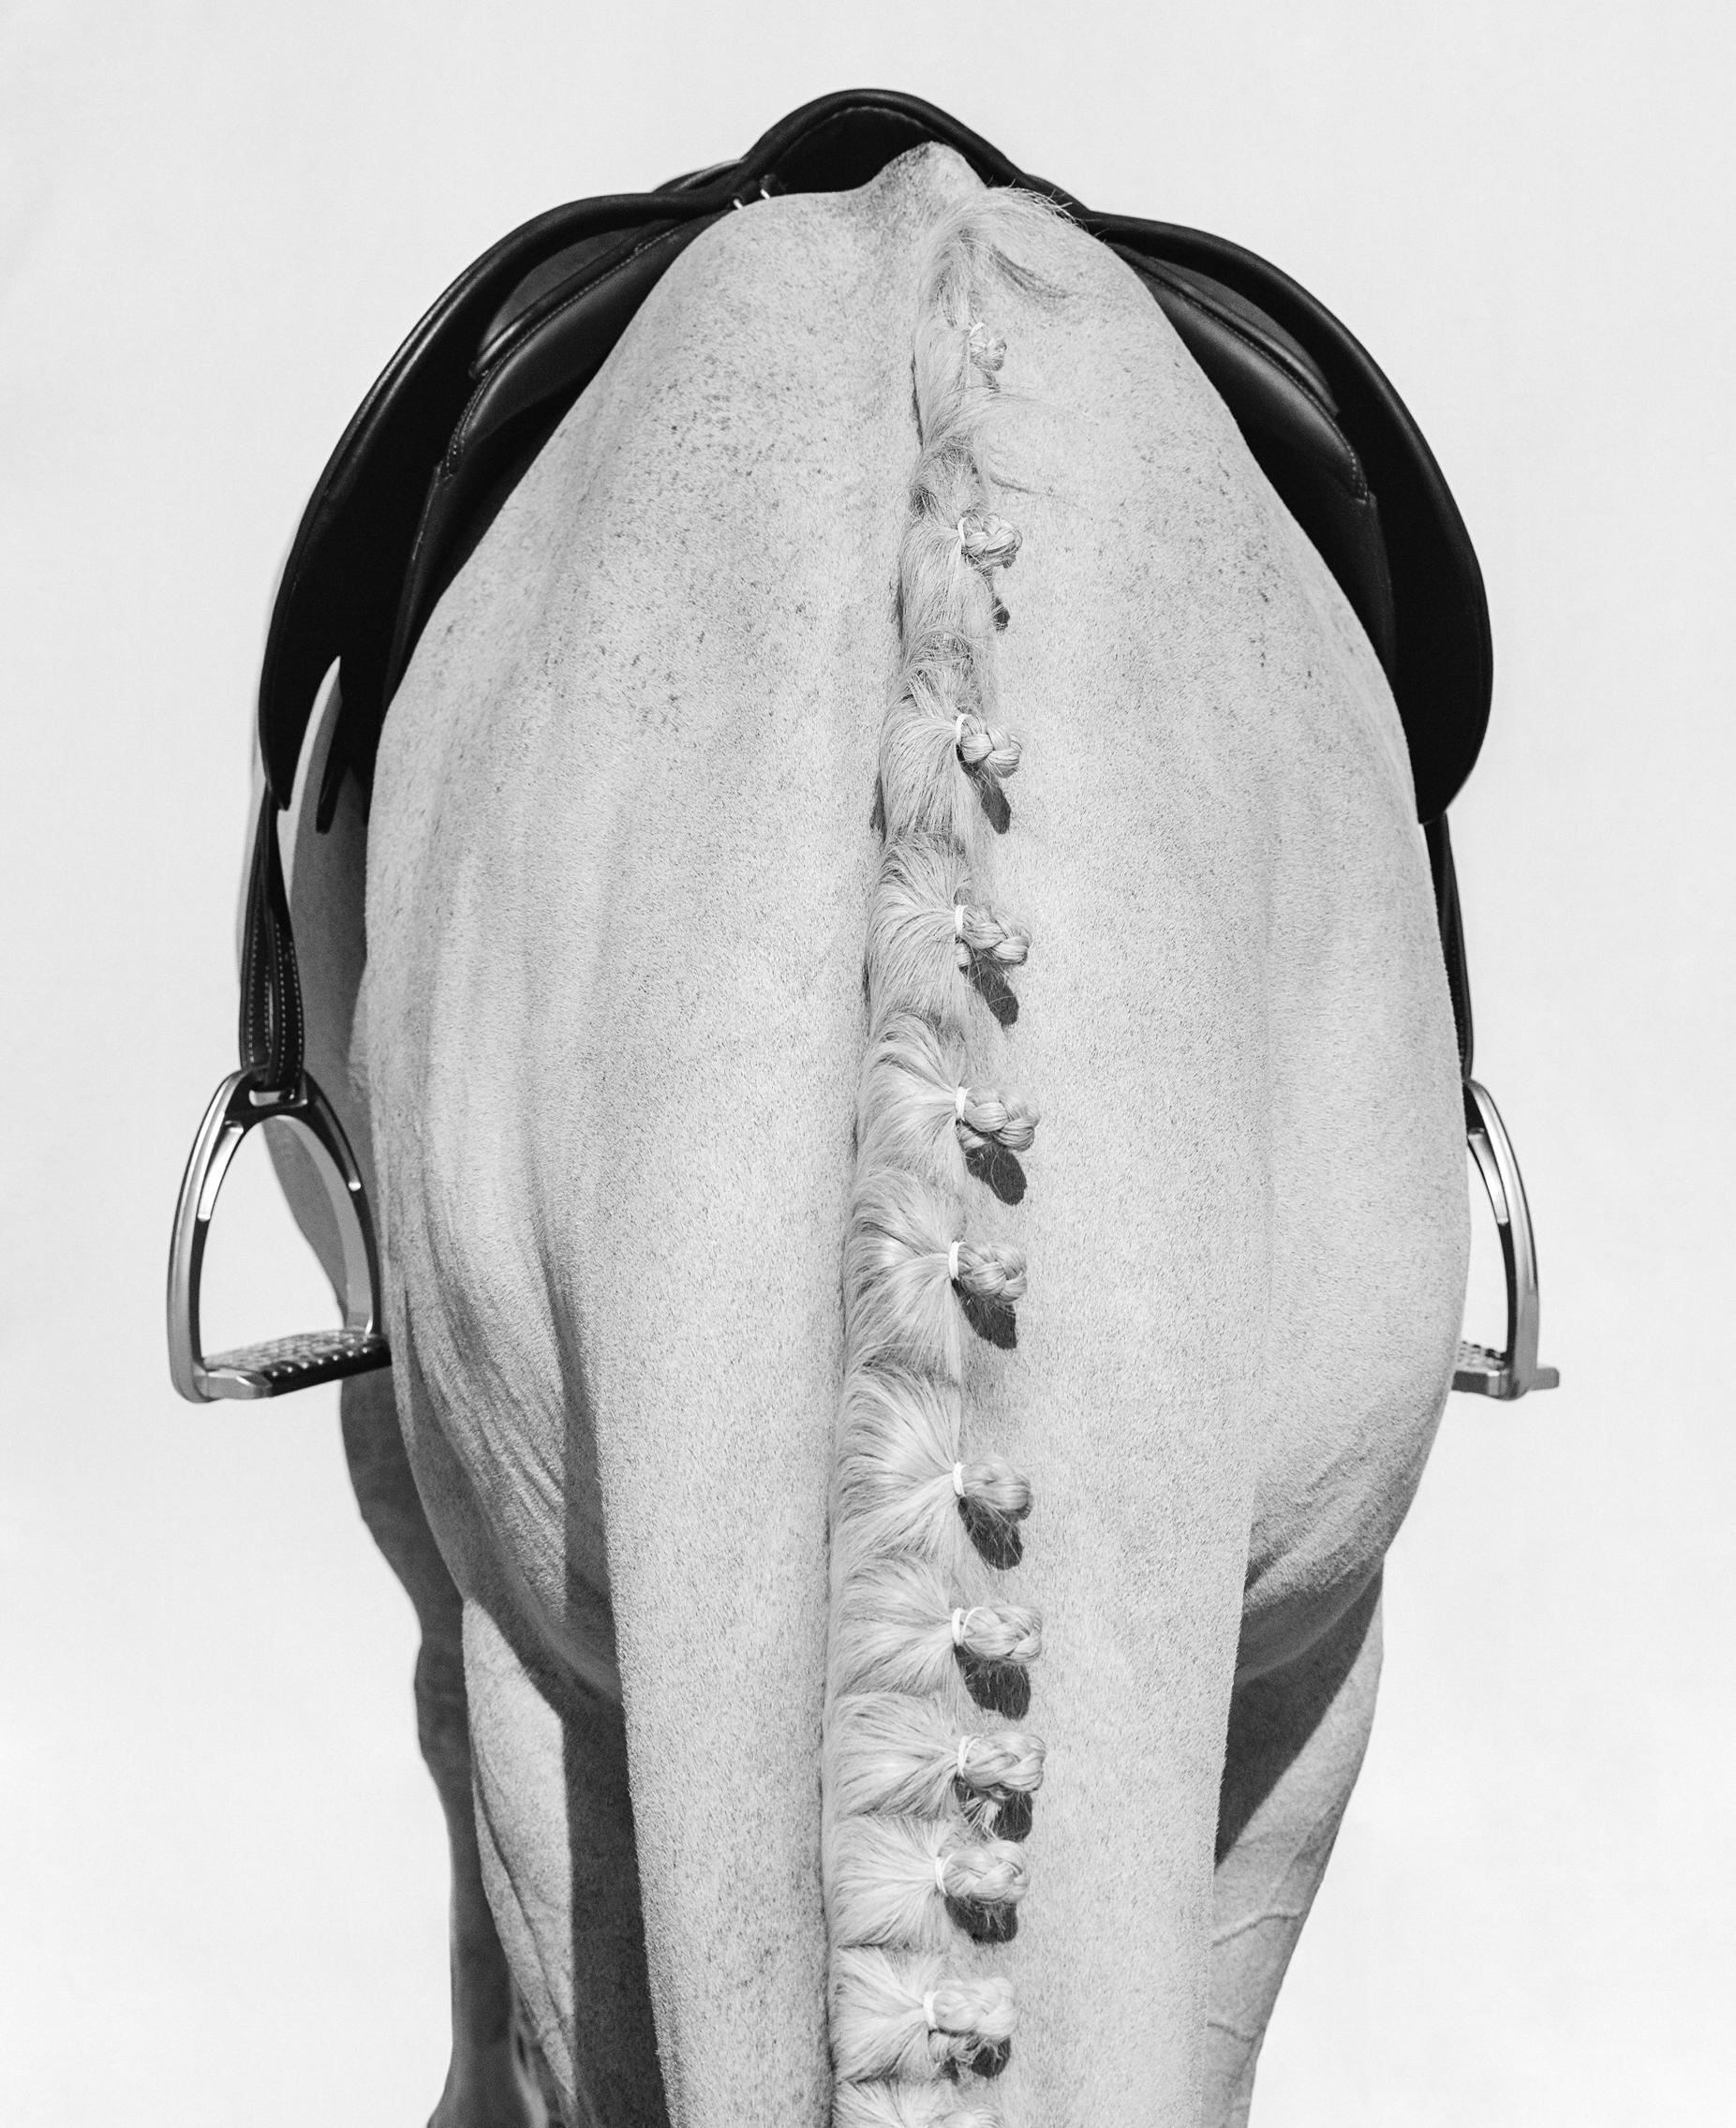 Serie: The Equestrian Collection'S
Archivalischer Pigmentdruck
Alle verfügbaren Größen ohne Rahmen (mit Rahmen):
40" x 32"	(47" x 39")
60" x 48"	(67" x 55")
75" x 60"	(84" x 69")
Auflage von 10 + 2 Artist Proofs insgesamt in allen Größen

Manchmal